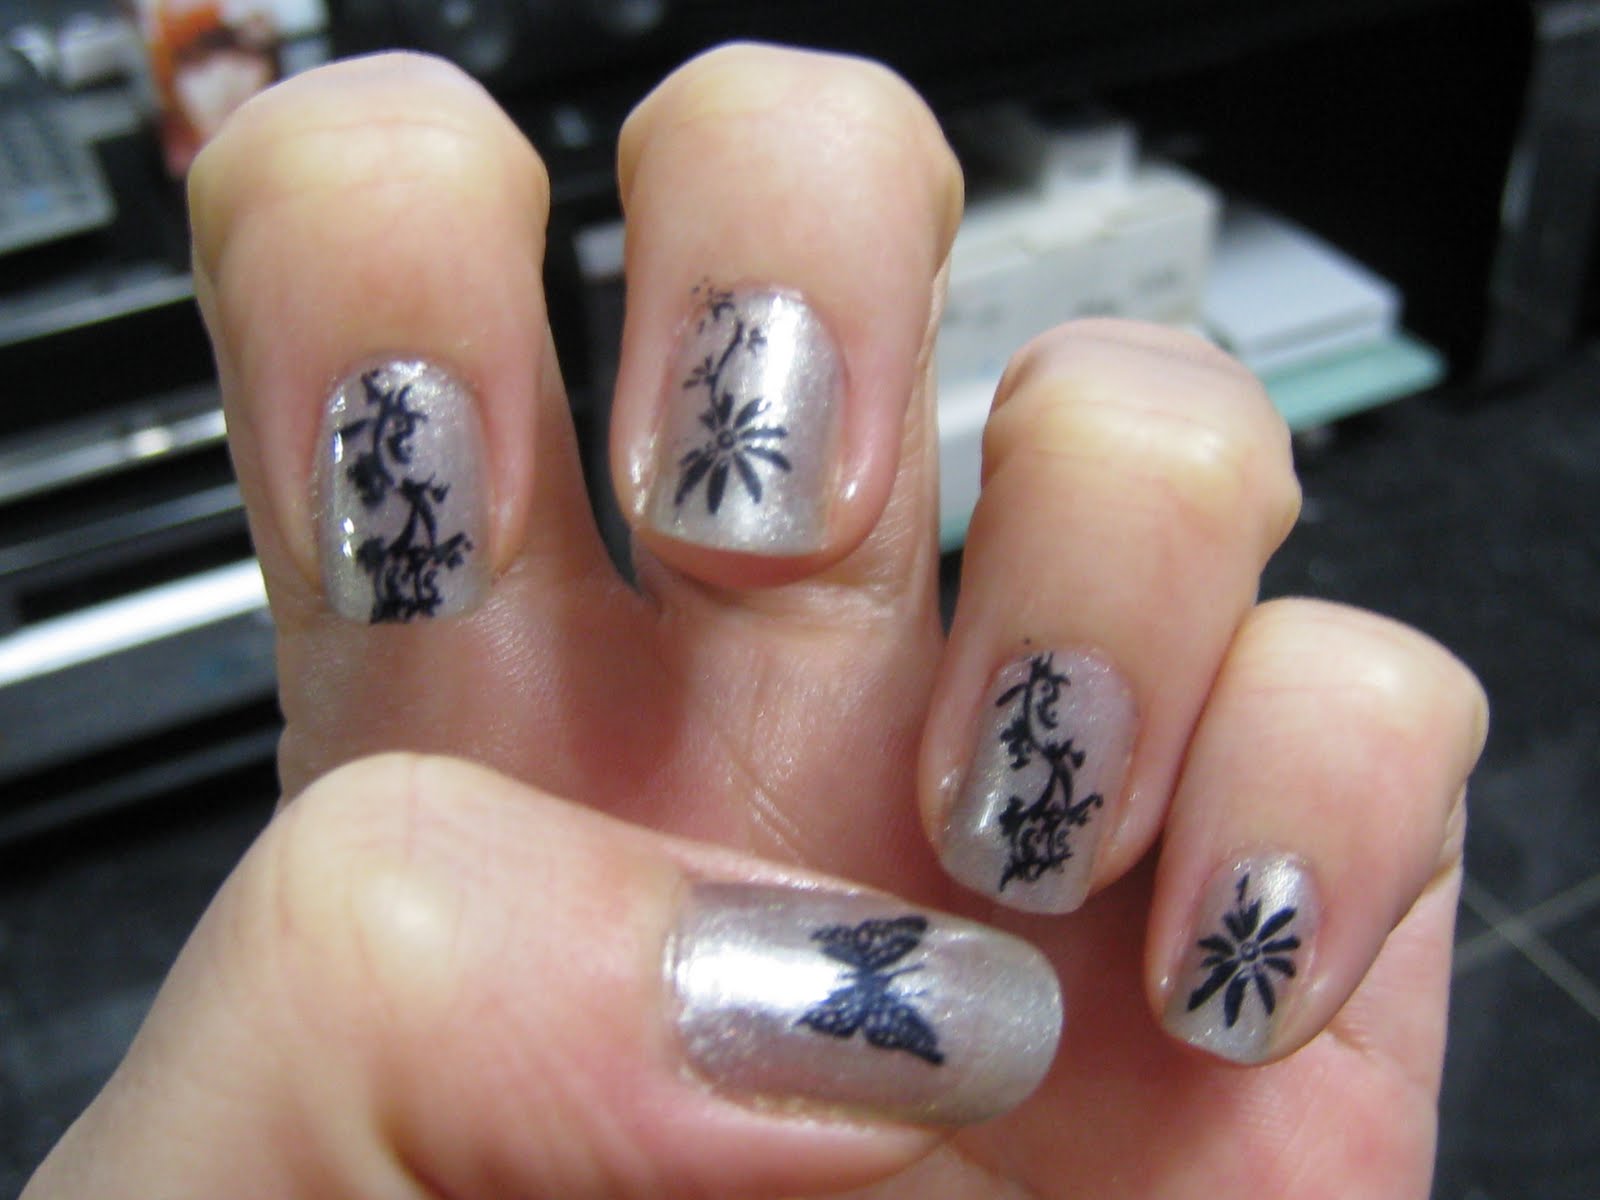 konad stamping nail art design